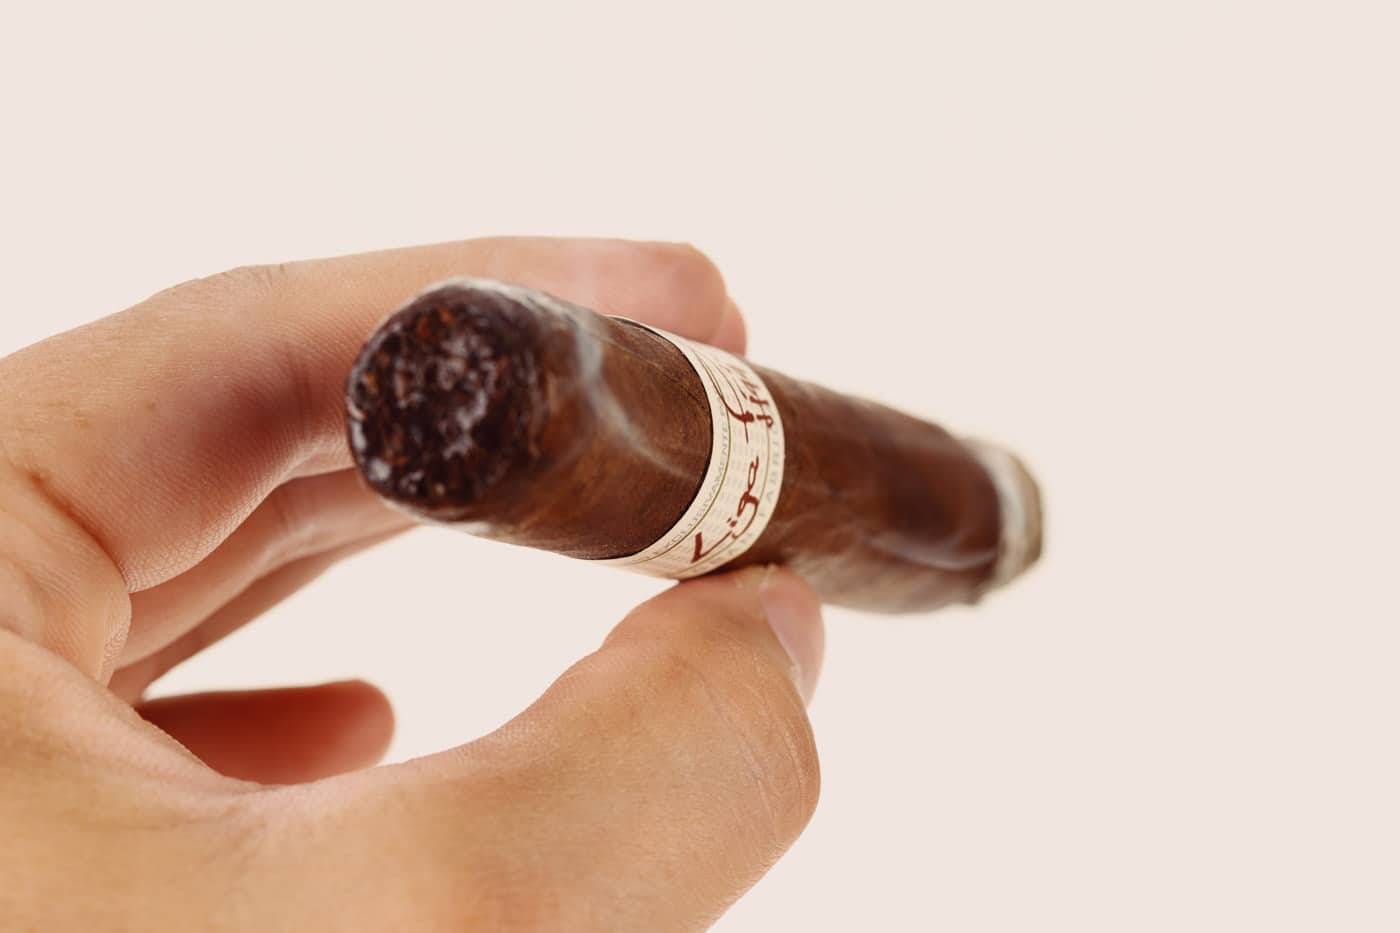 Liga Privada H99 Toro cigar review